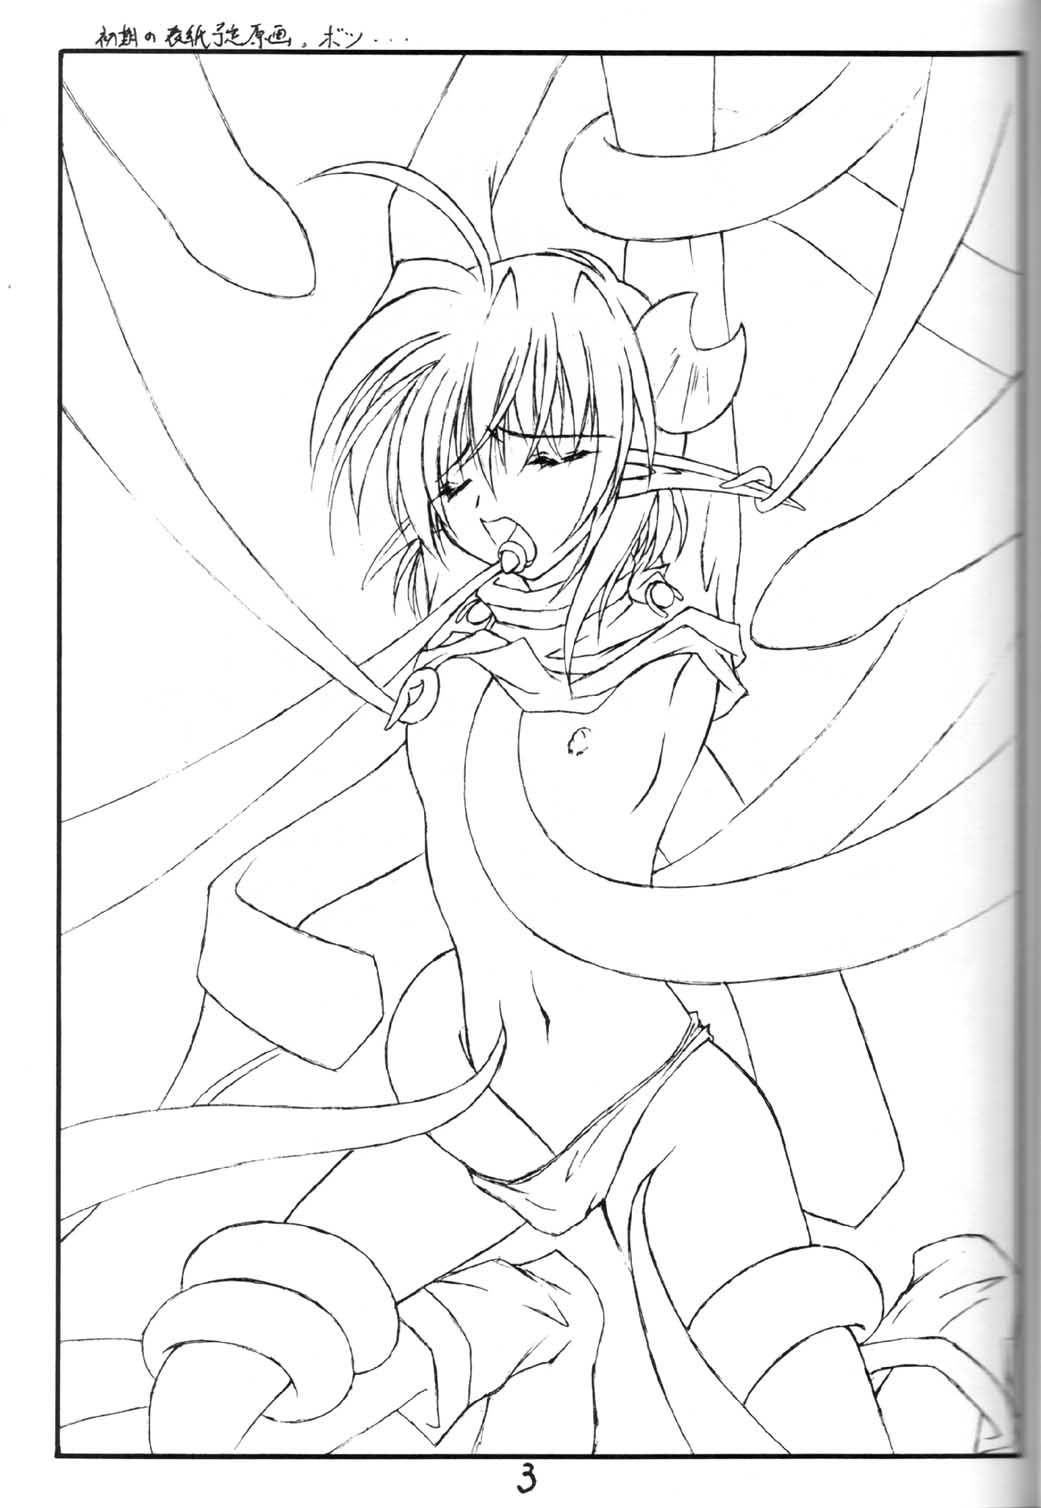 Zorra Elf's Ear Book 7 - Kamigami no Tasogare - Star ocean 2 Free Blow Job - Page 2